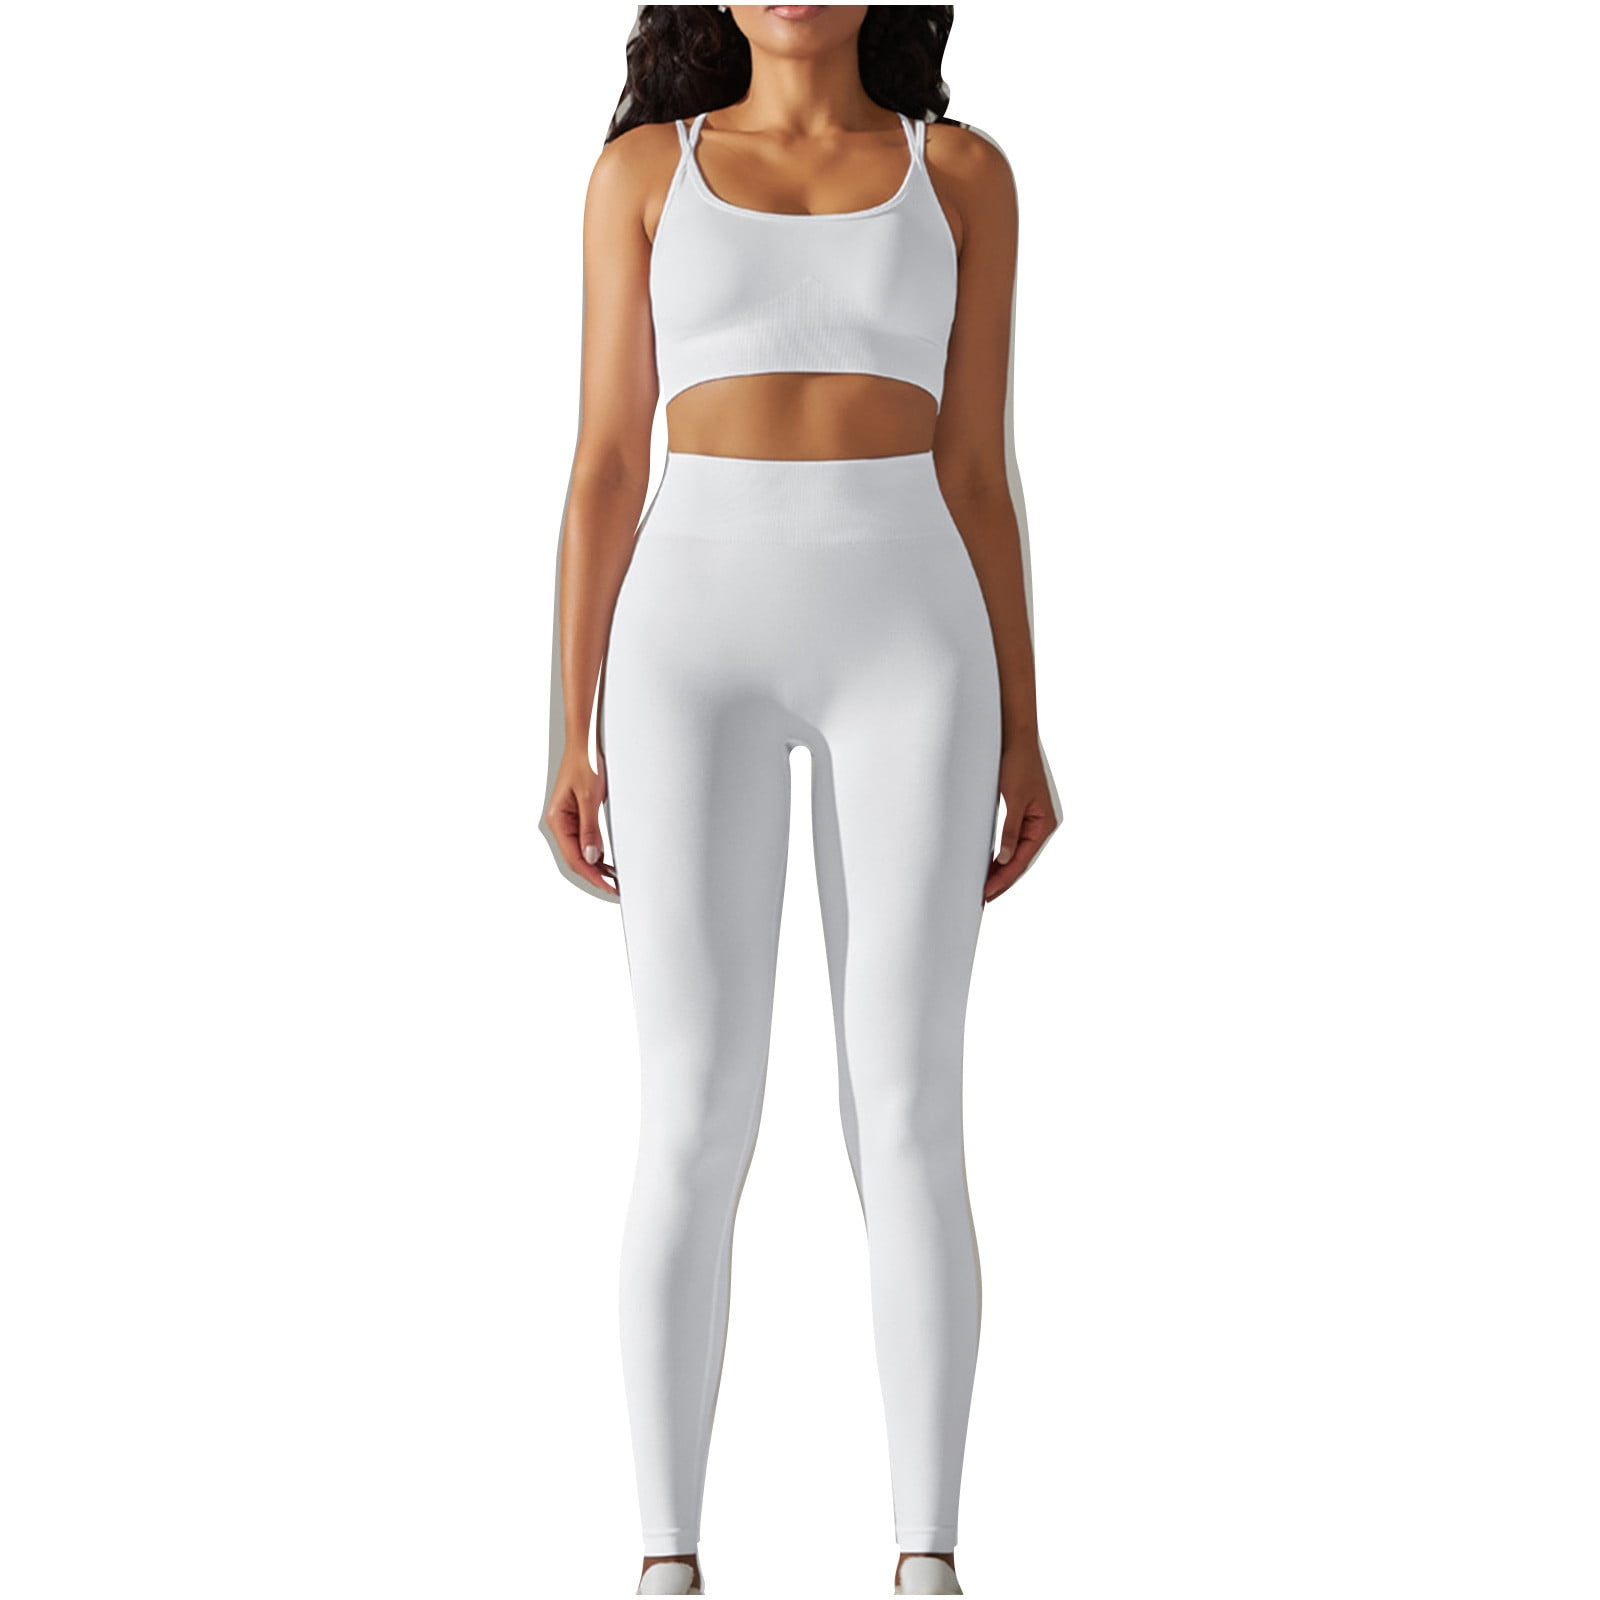 Details 236+ white top matching leggings